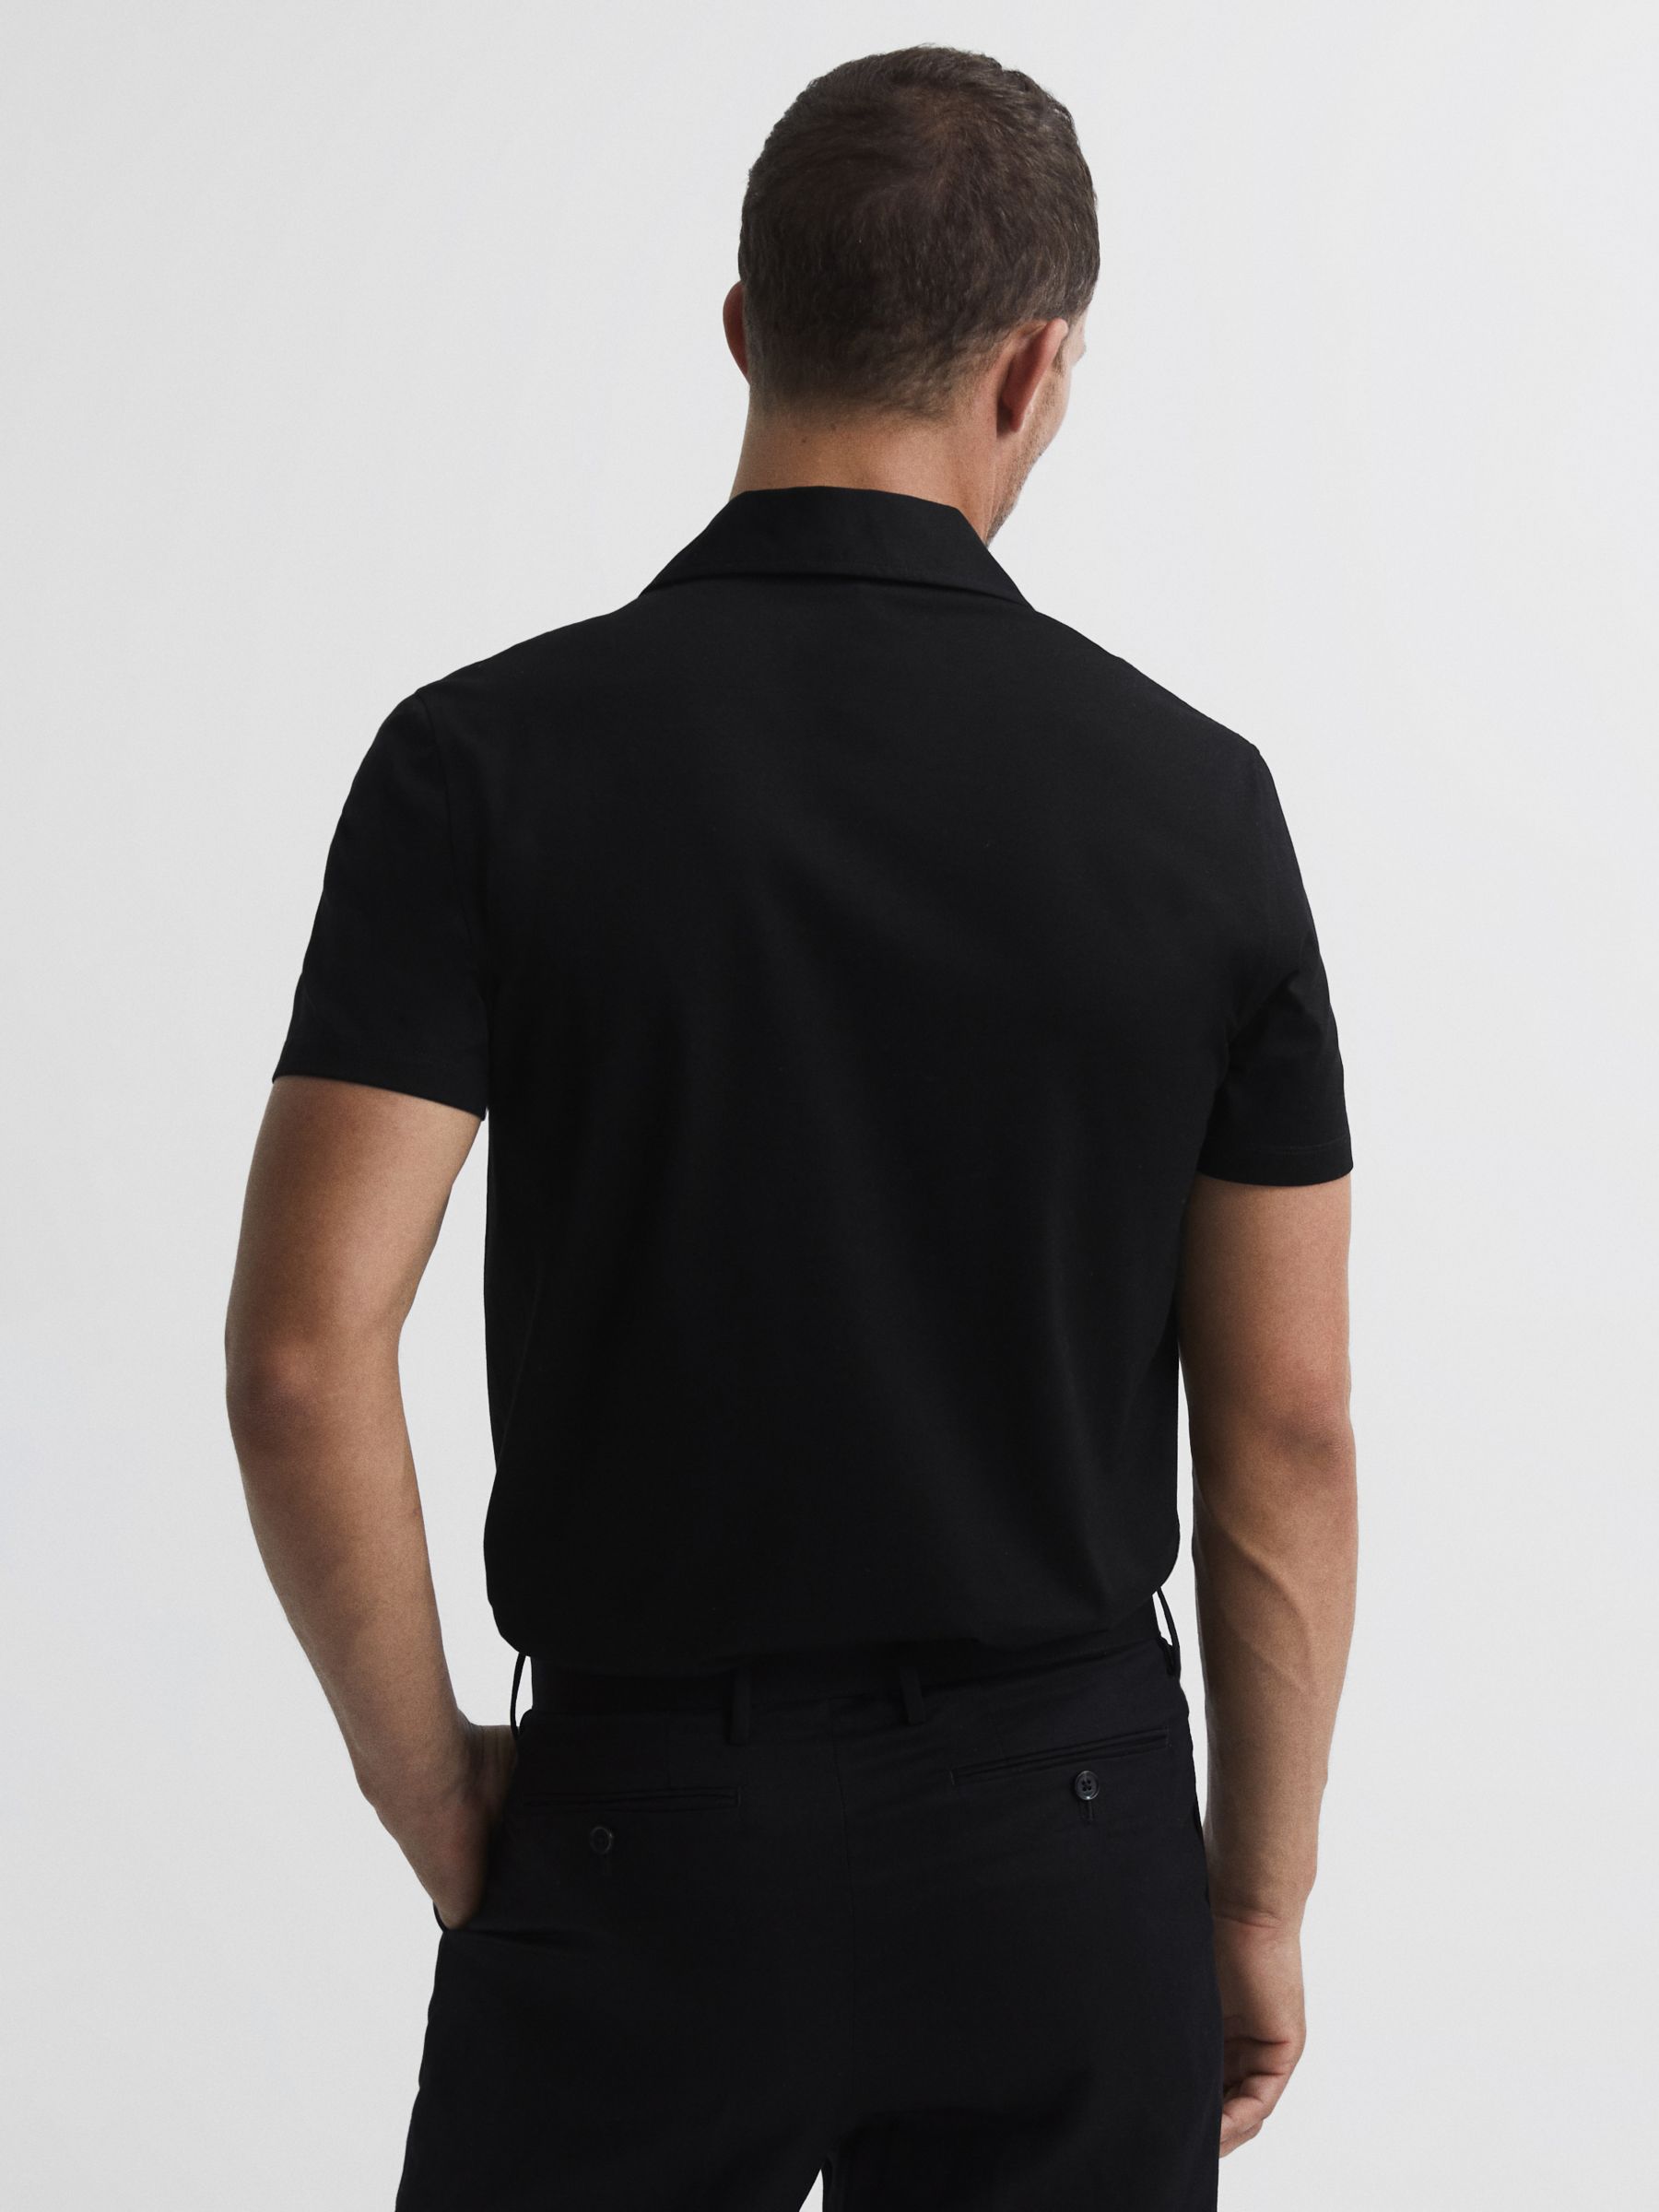 Reiss Caspa Cuban Collar Short Sleeve Shirt, Black, XS